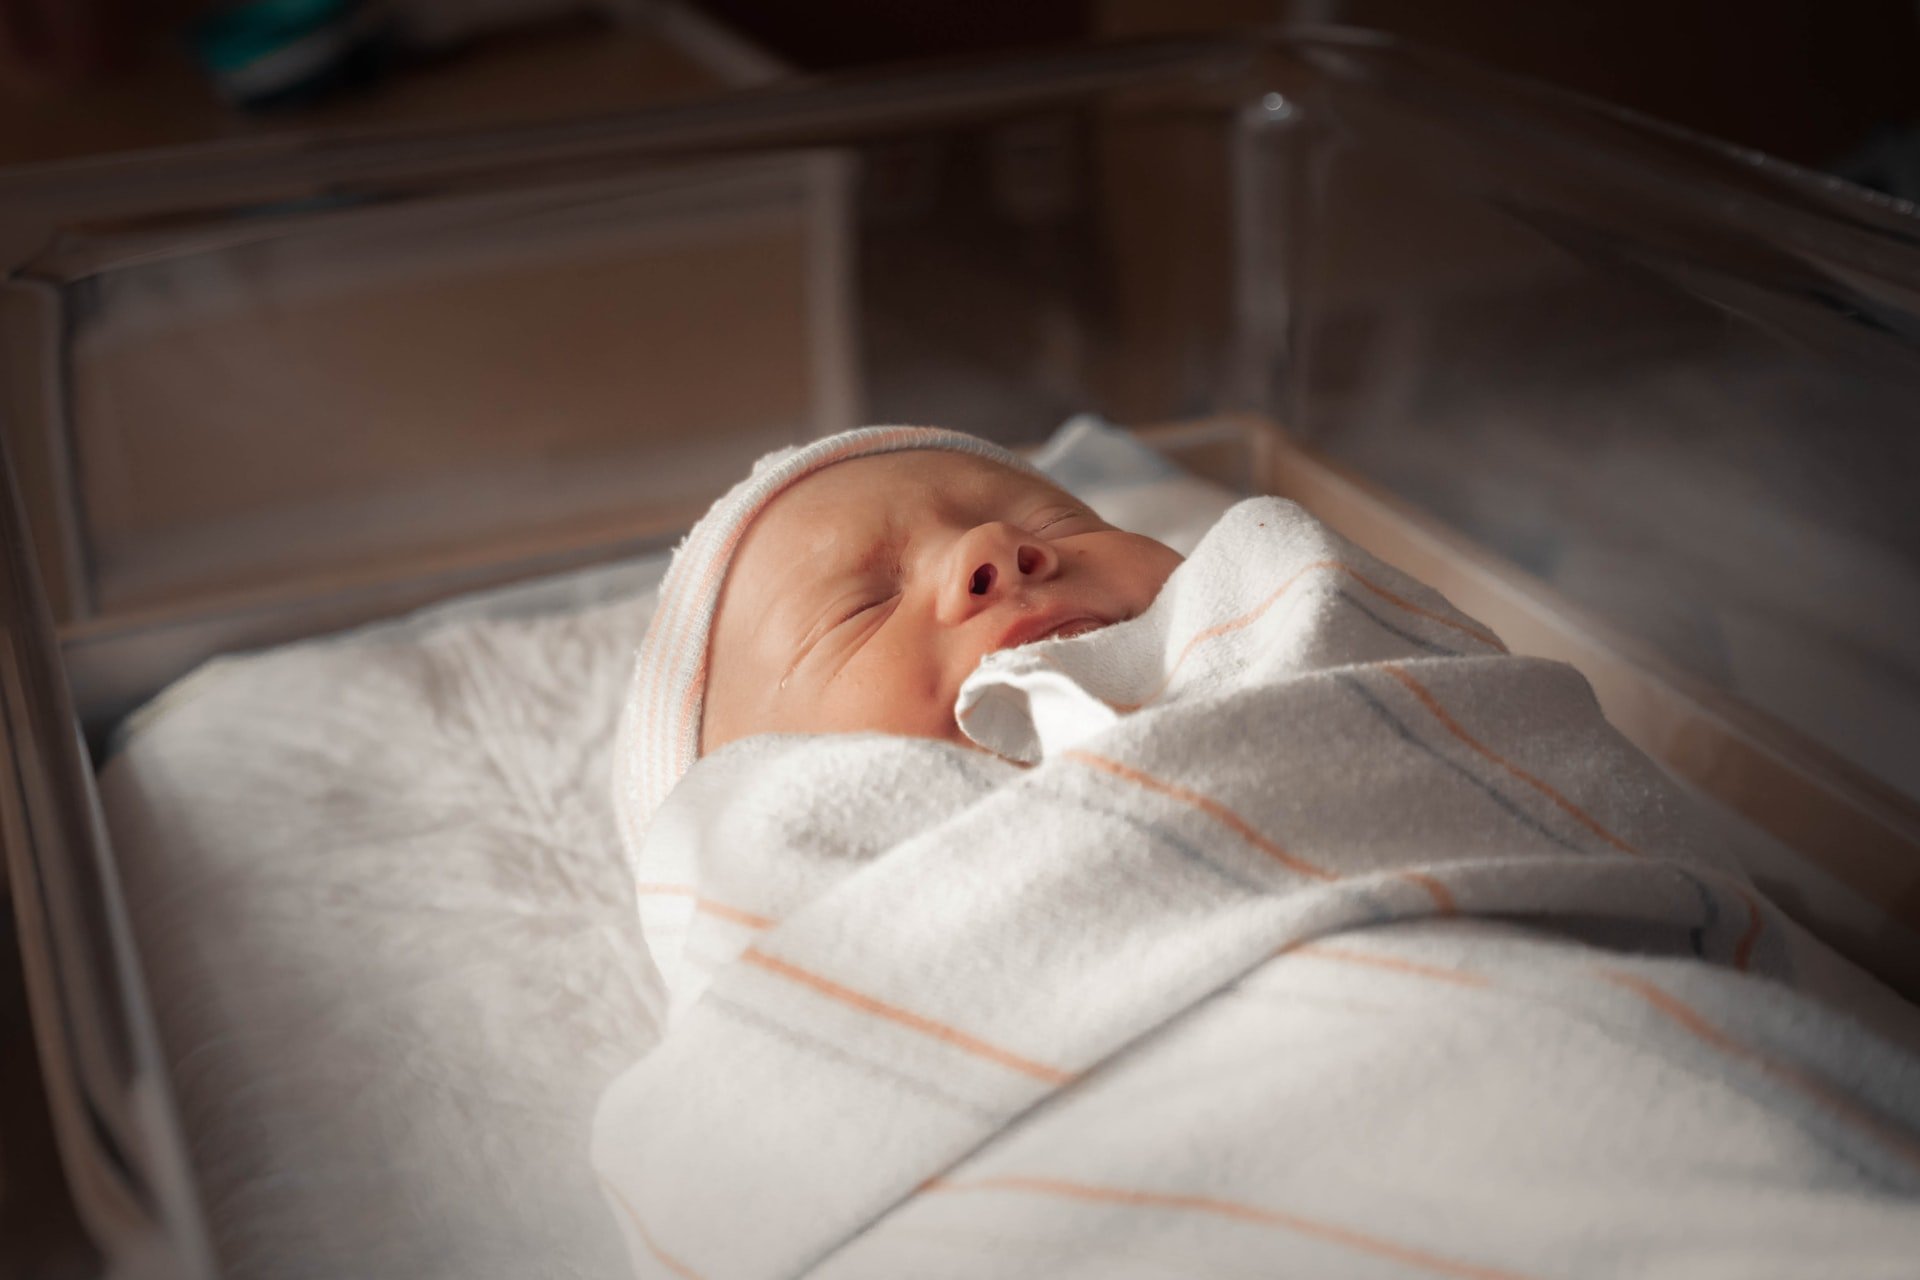 Michael sah sich die Babys in der Neugeborenenabteilung an. | Quelle: Unsplash